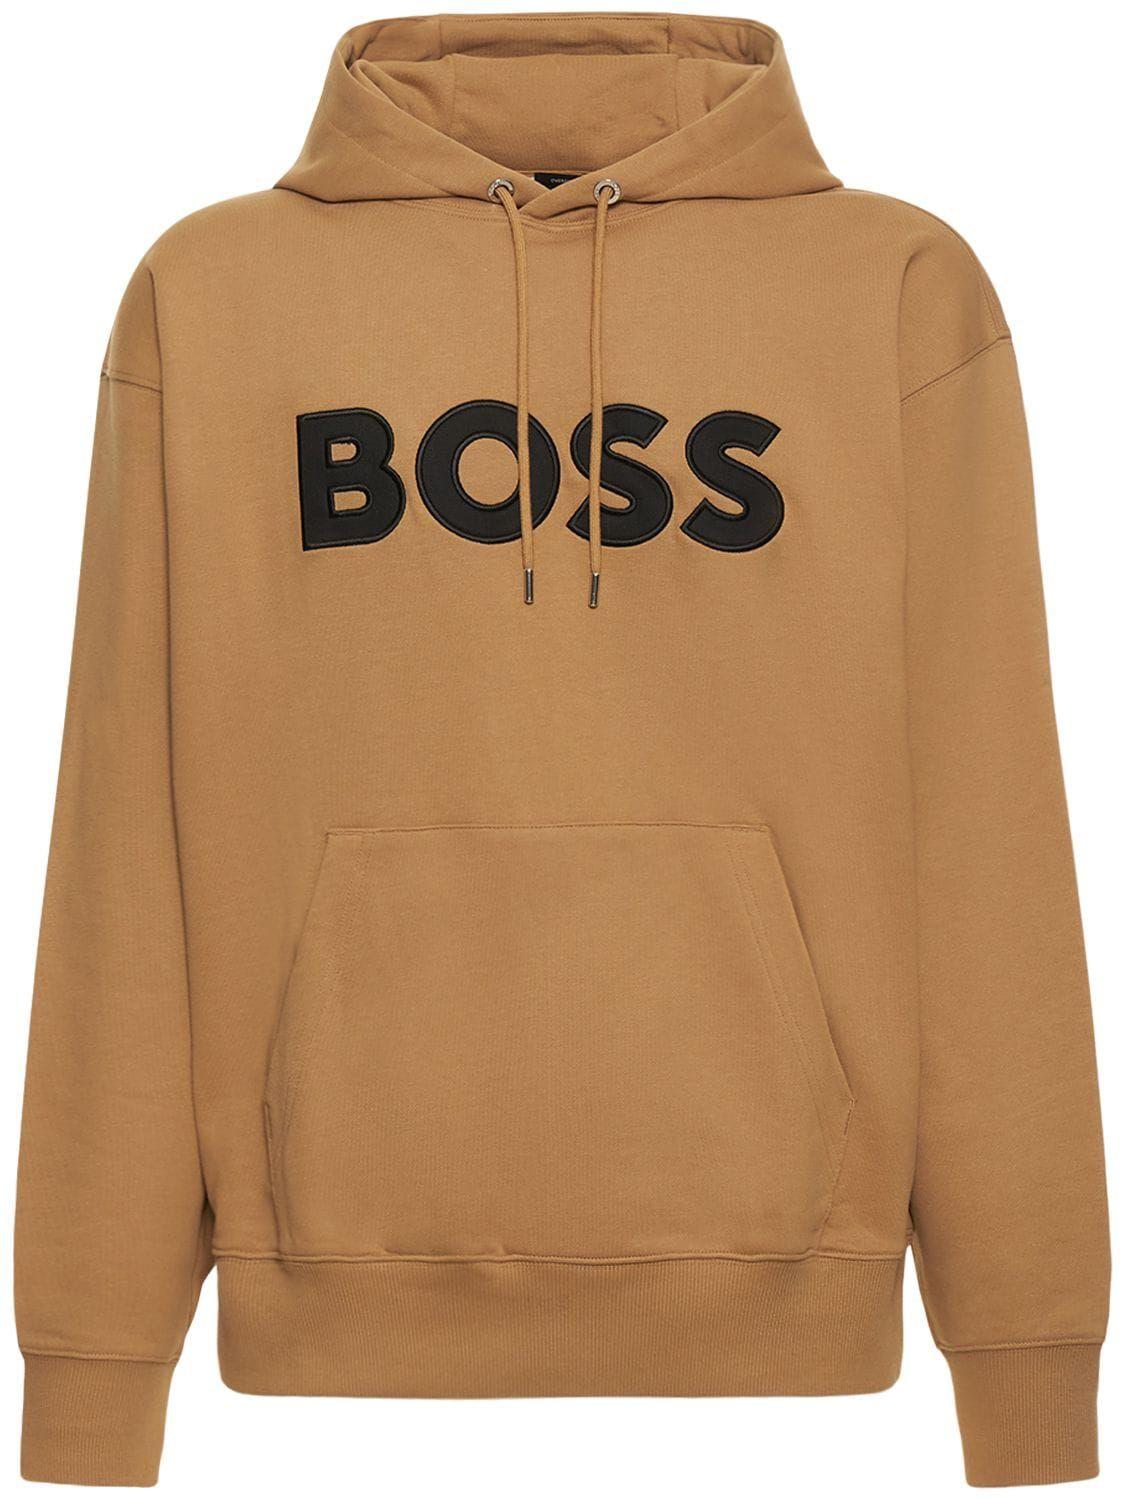 BOSS by HUGO BOSS Logo Sweatshirt Hoodie in Brown for Men | Lyst